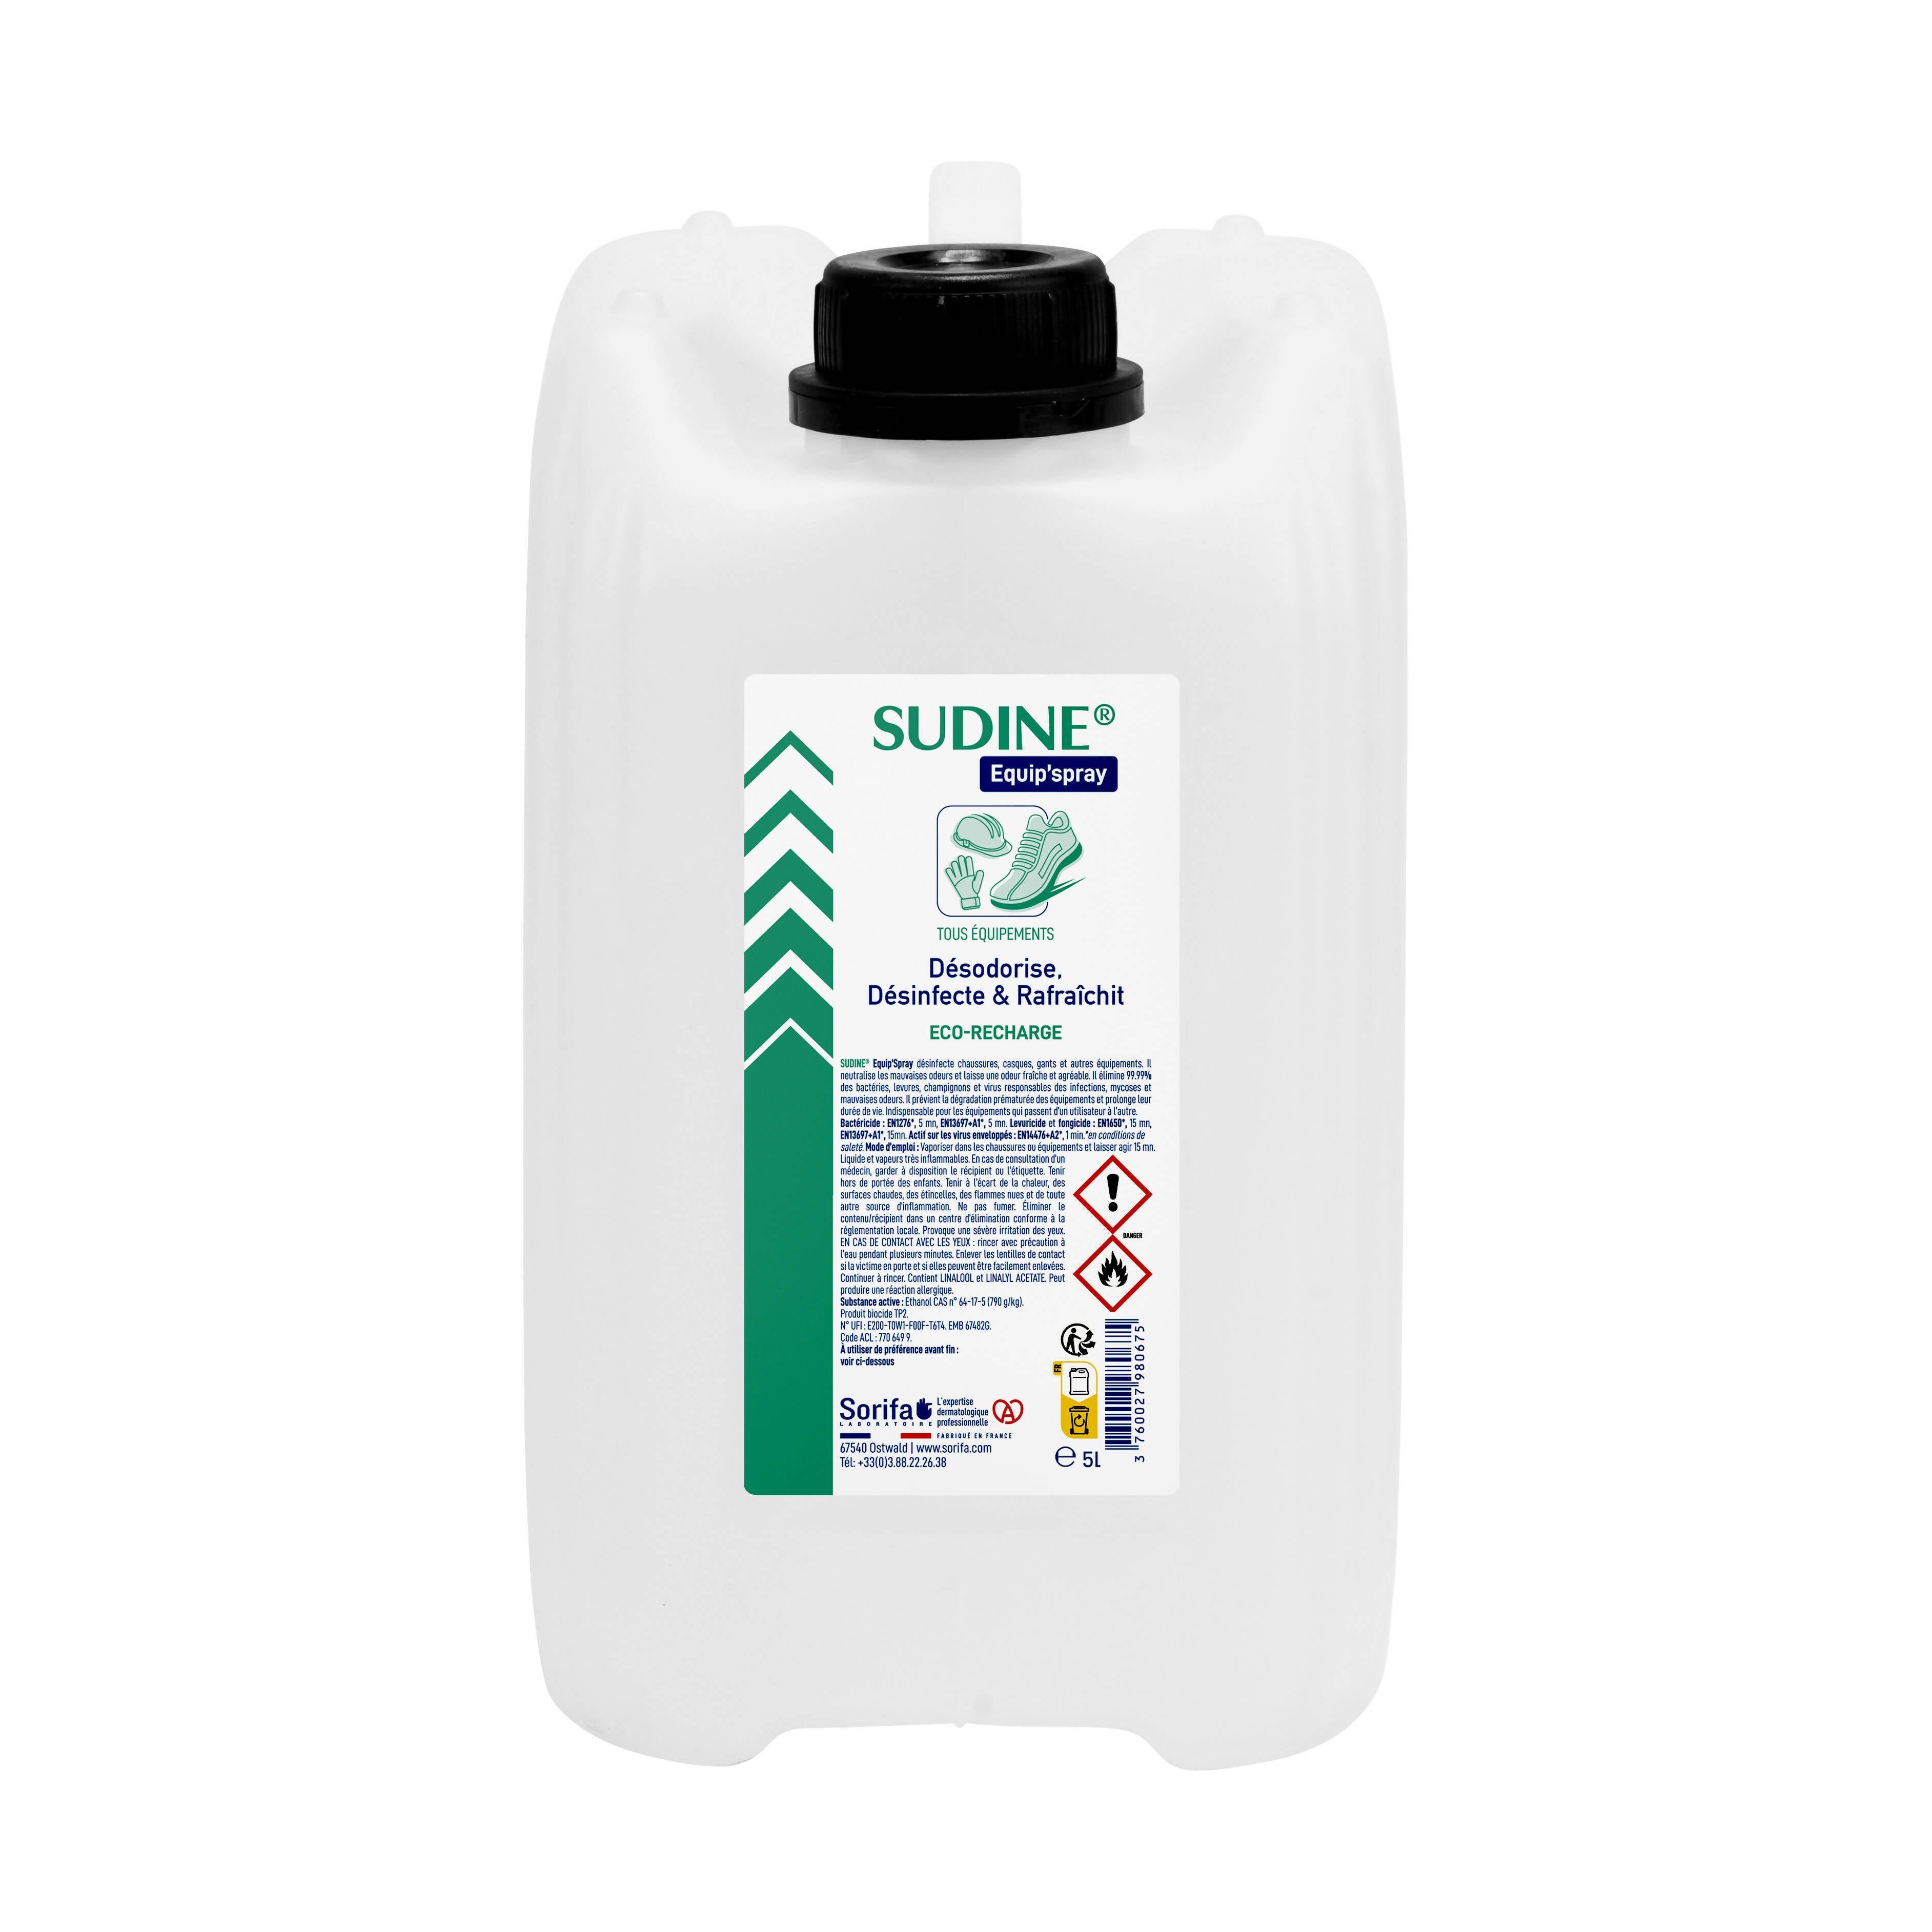 SORIFA - Sudine Equip'spray - Desodoriert, desinfiziert, erfrischt - Schuhe, Helme, Handschuhe, Ausrüstung - 5L Nachfüllpackung für SUDINE Equip'spray 50 und 125 ml oder für das 1L SORIFA Spray